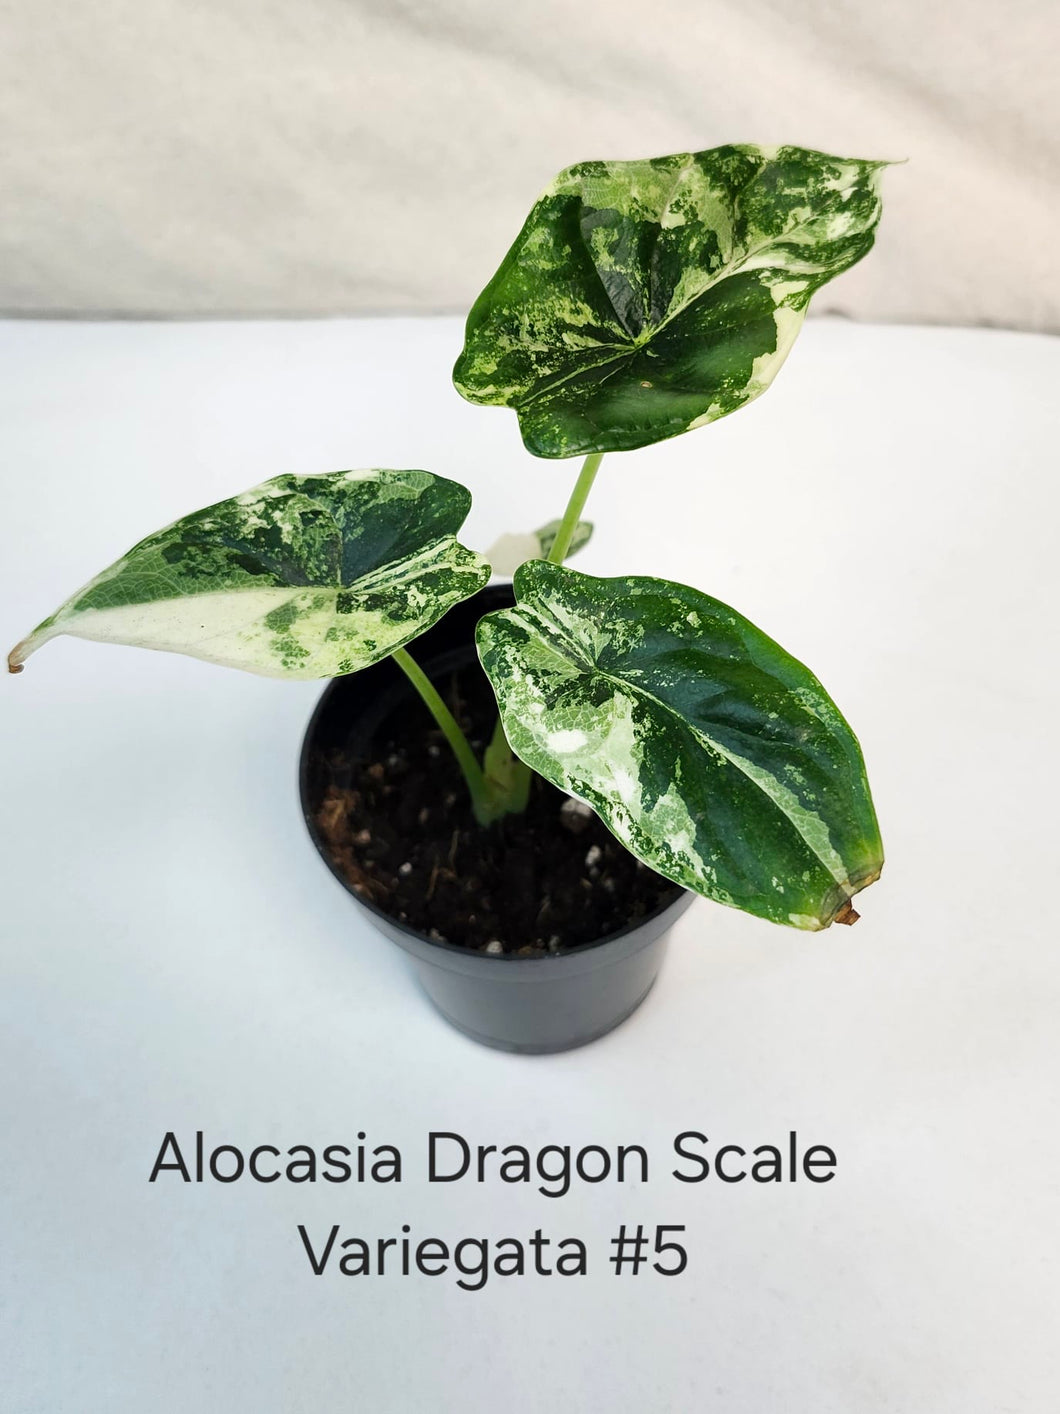 Alocasia Dragon Scale variegata #5